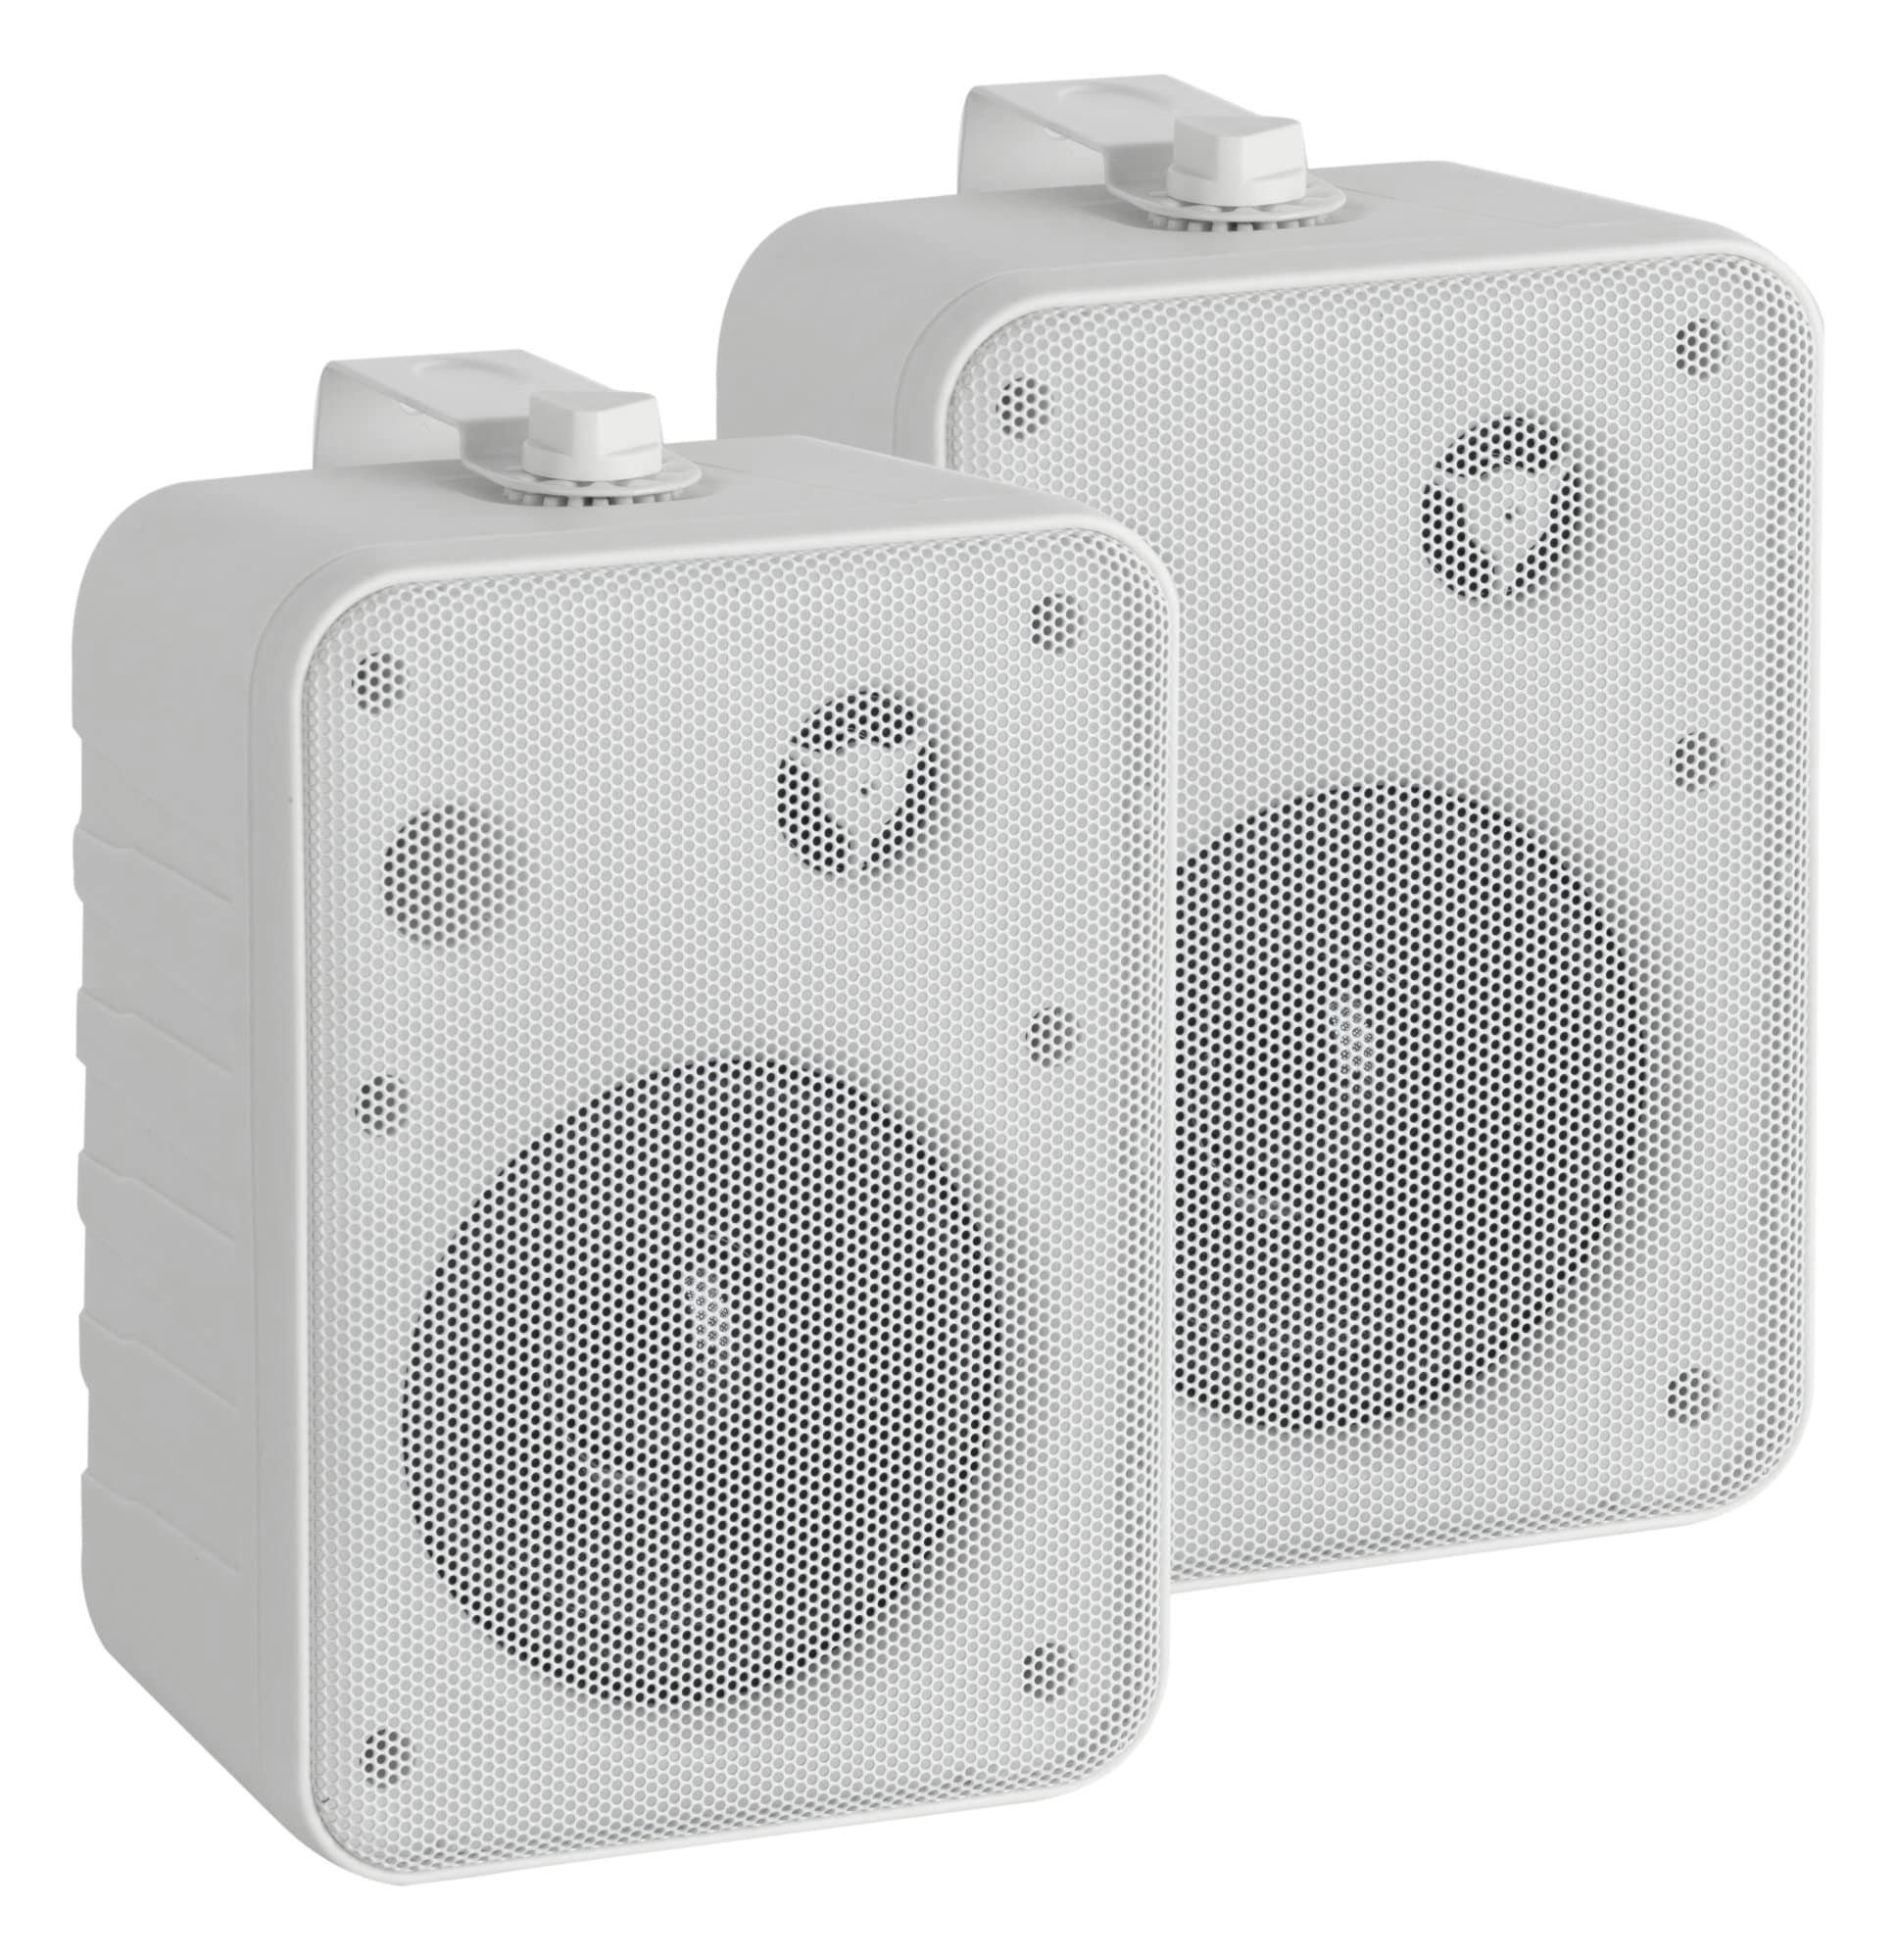 McGrey One Control MKIII HiFi-Lautsprecher - Lautsprecherboxen paar Lautsprecher (10 W, Boxen für Installation, Studio oder HiFi-Anwendung)